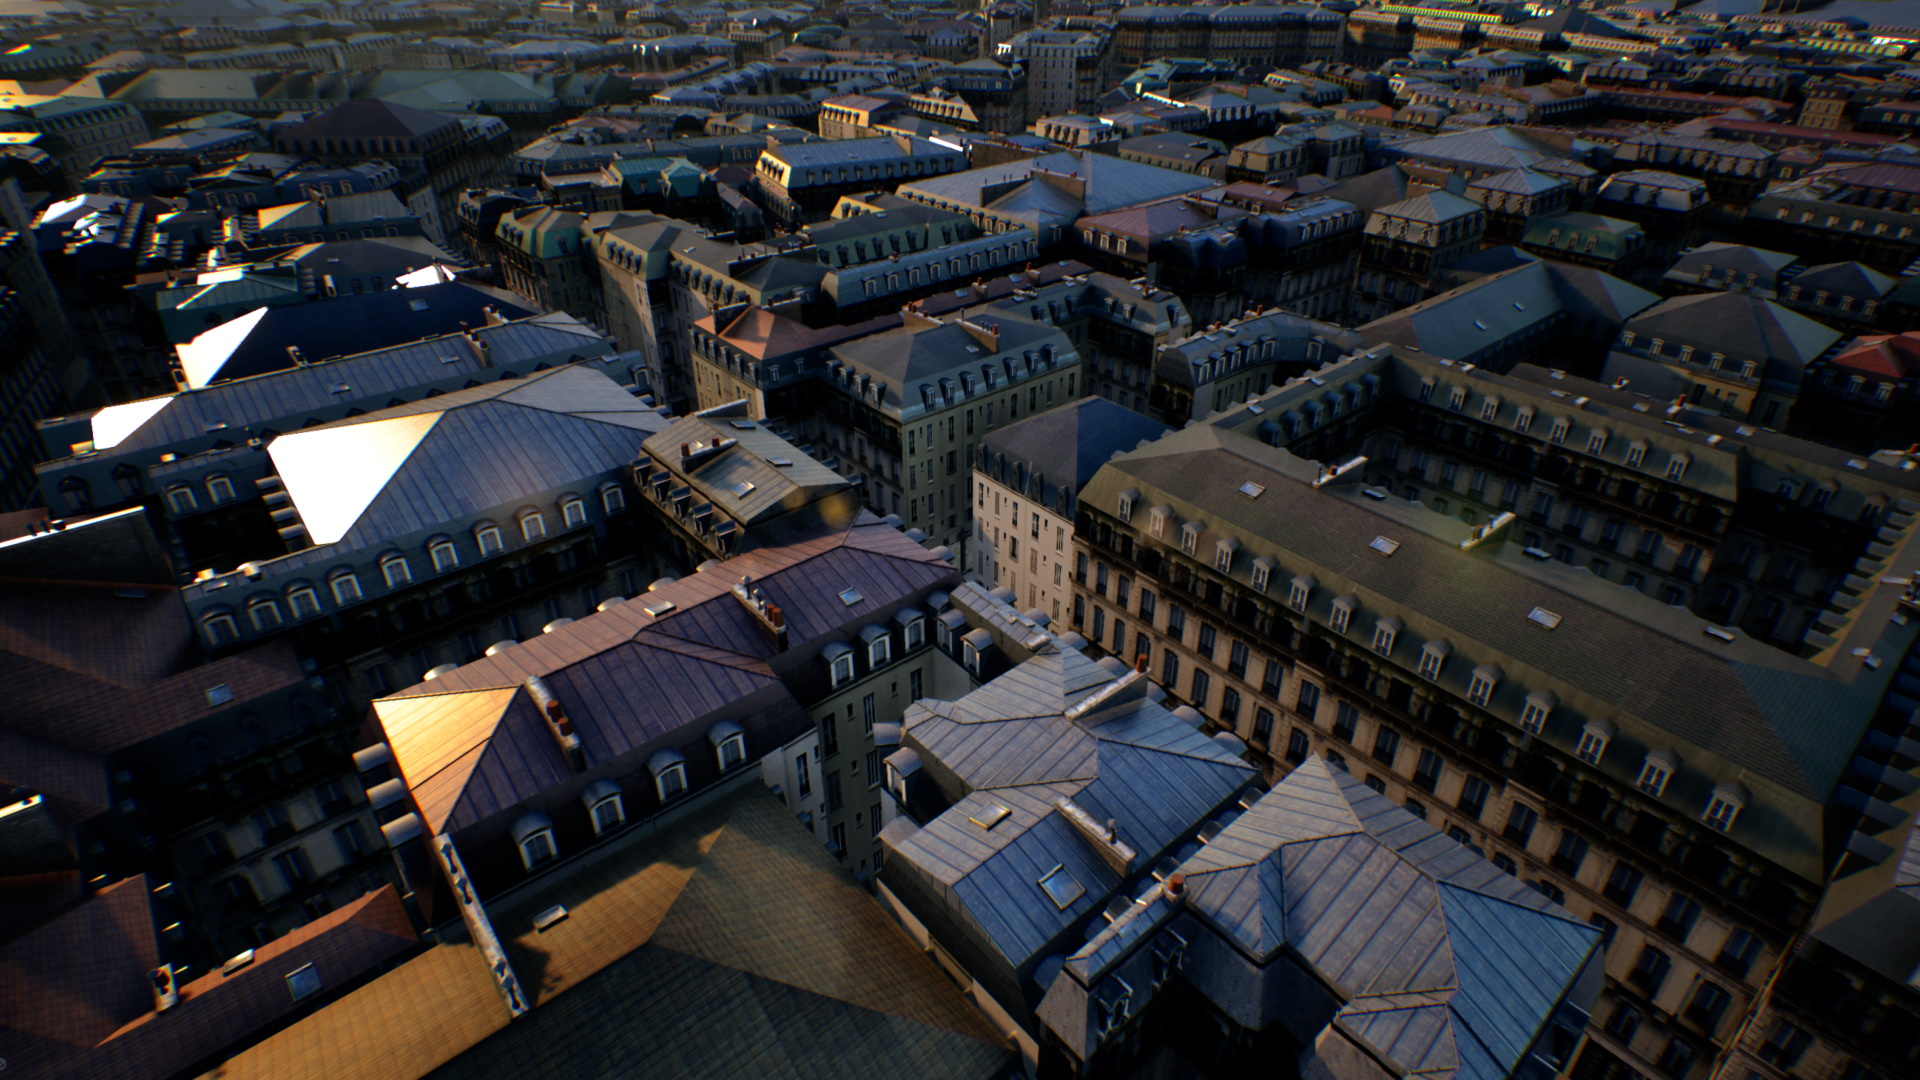 City generated using Vitruvio